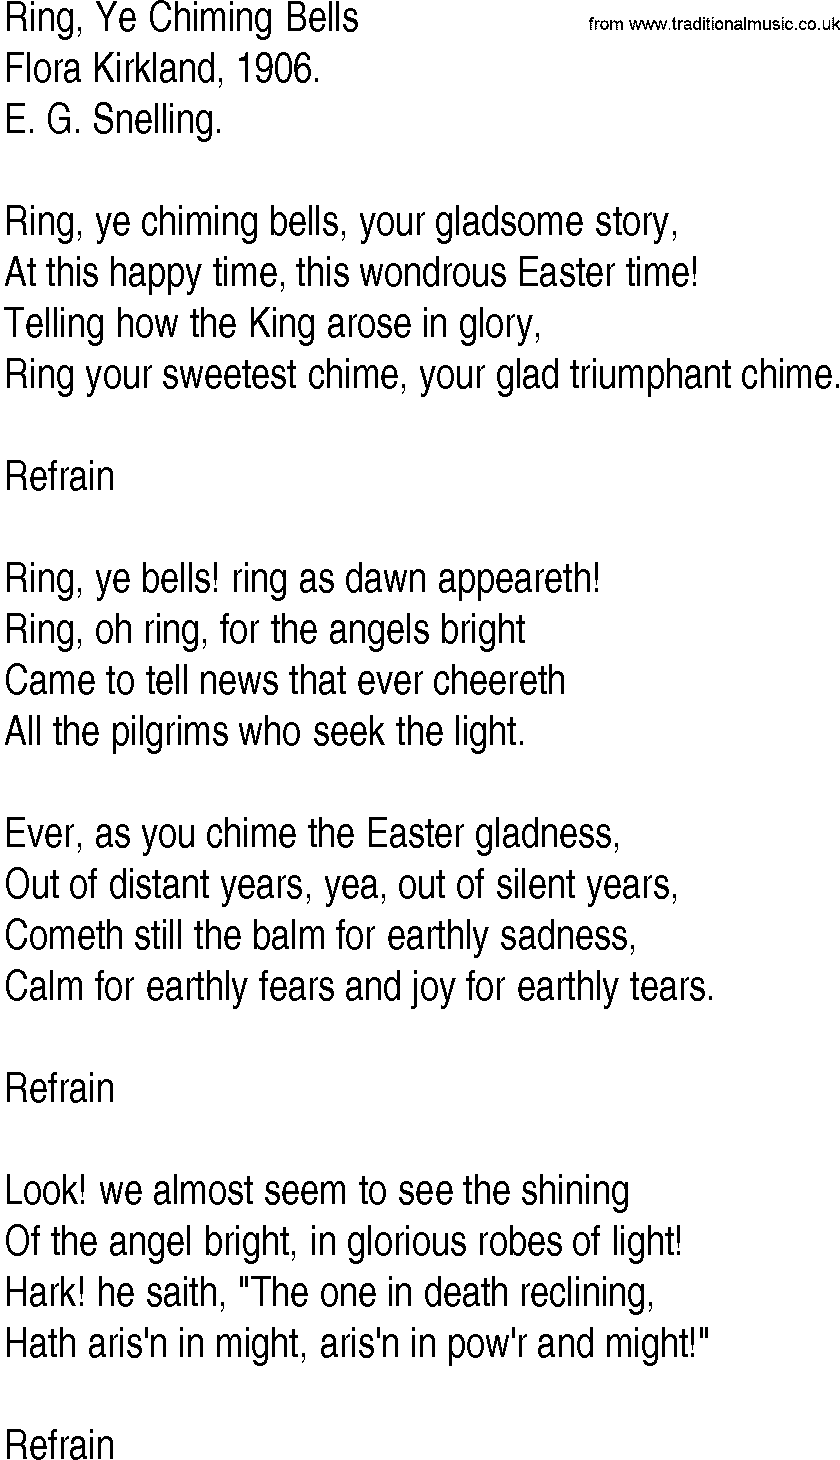 Hymn and Gospel Song: Ring, Ye Chiming Bells by Flora Kirkland lyrics